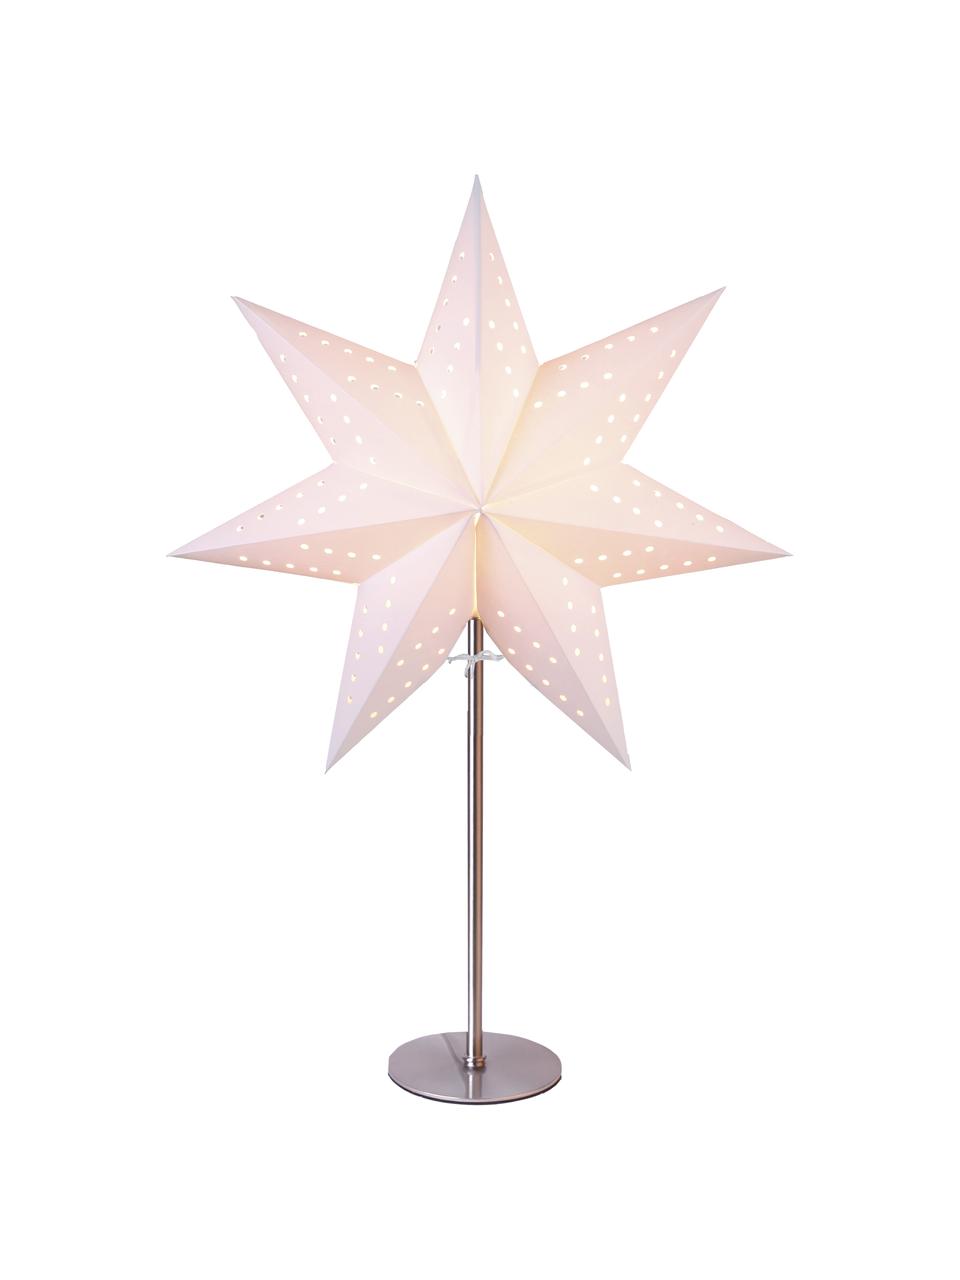 Estrella luminosa Boho, Cable: plástico, Blanco, plateado, An 34 x Al 51 cm